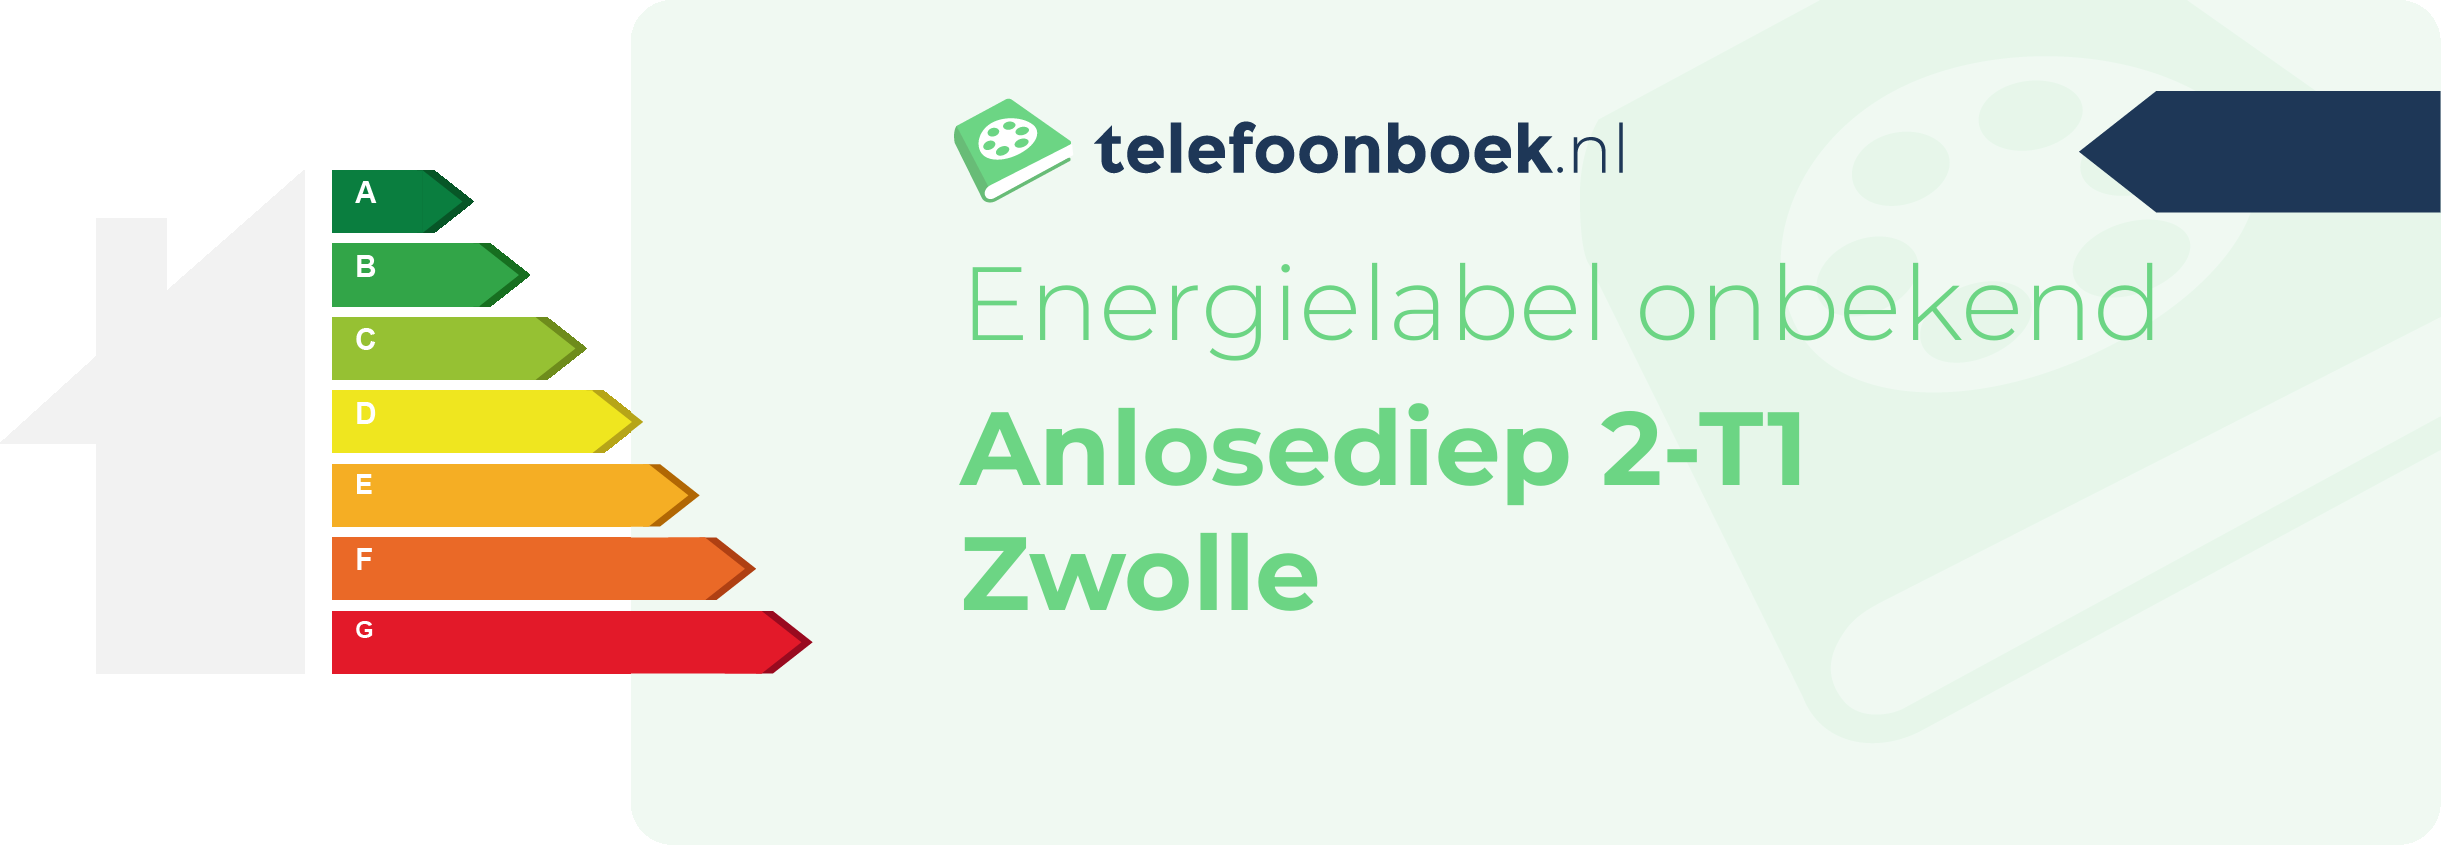 Energielabel Anlosediep 2-T1 Zwolle